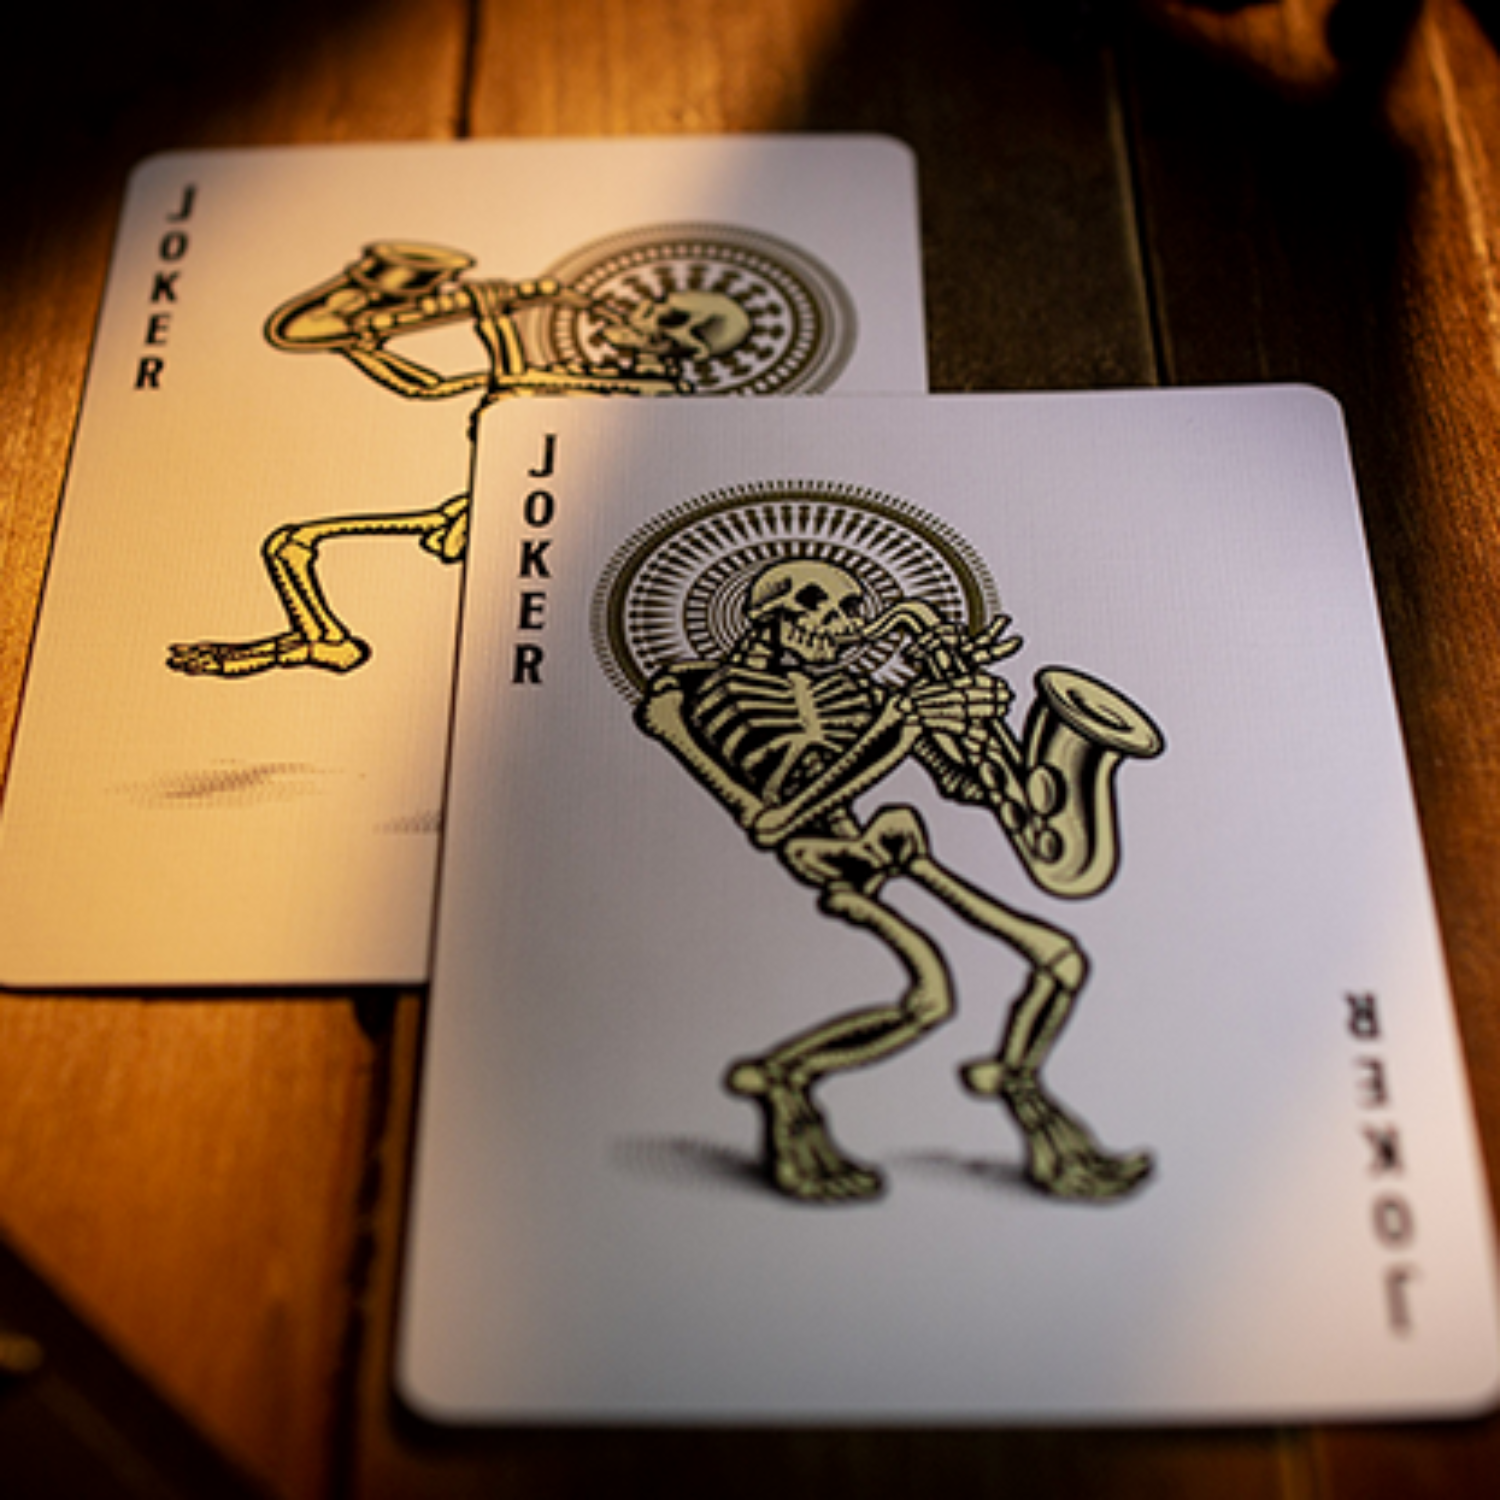 [스켈스트루먼트덱]Skelstrument Playing Cards Printed by US Playing Card